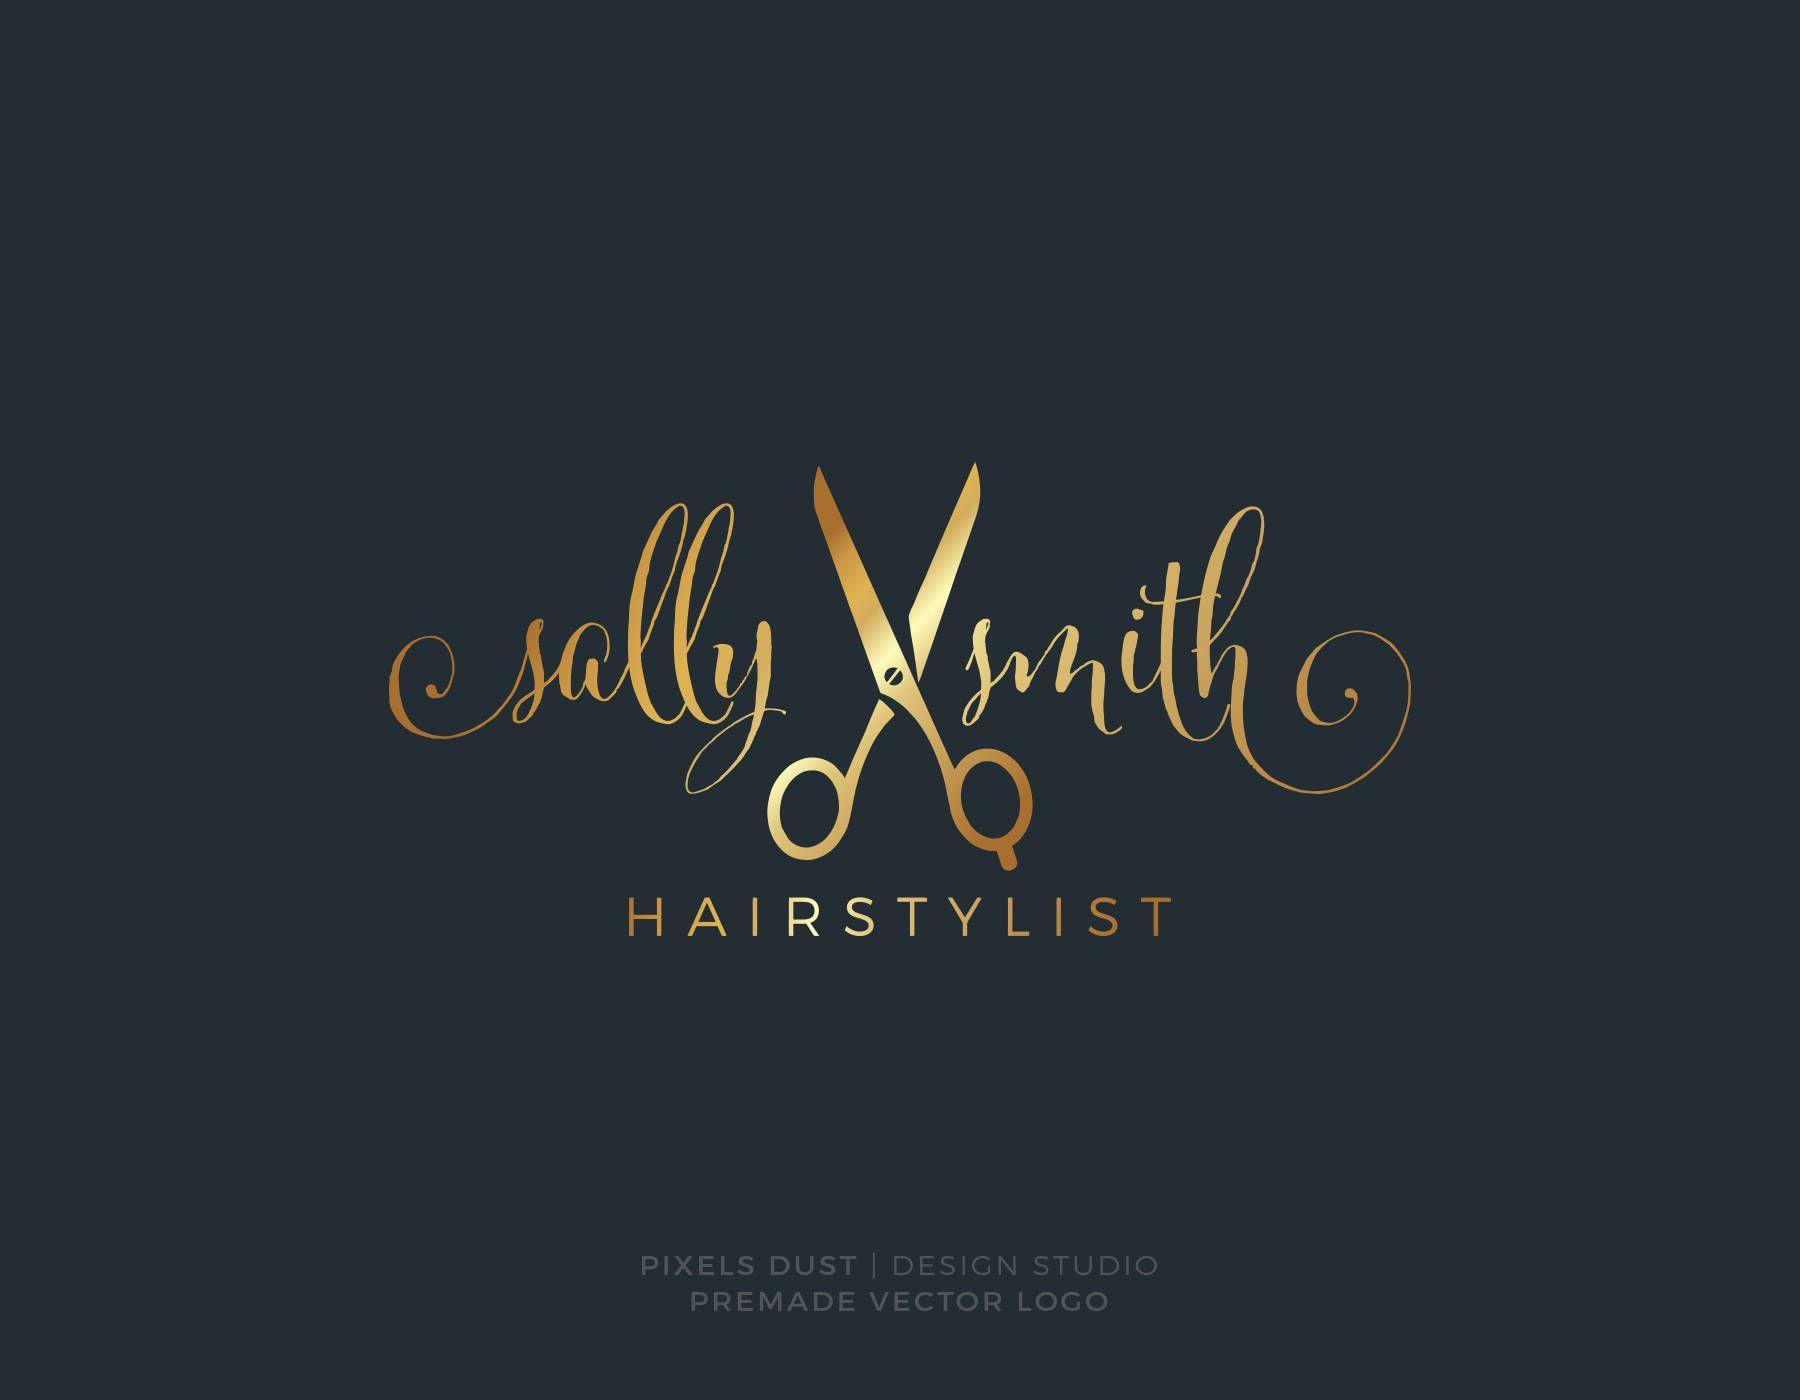 Hair Logo - Scissors Logo Hair Logo Hairstyle Hairstylist Hair Logo | Etsy